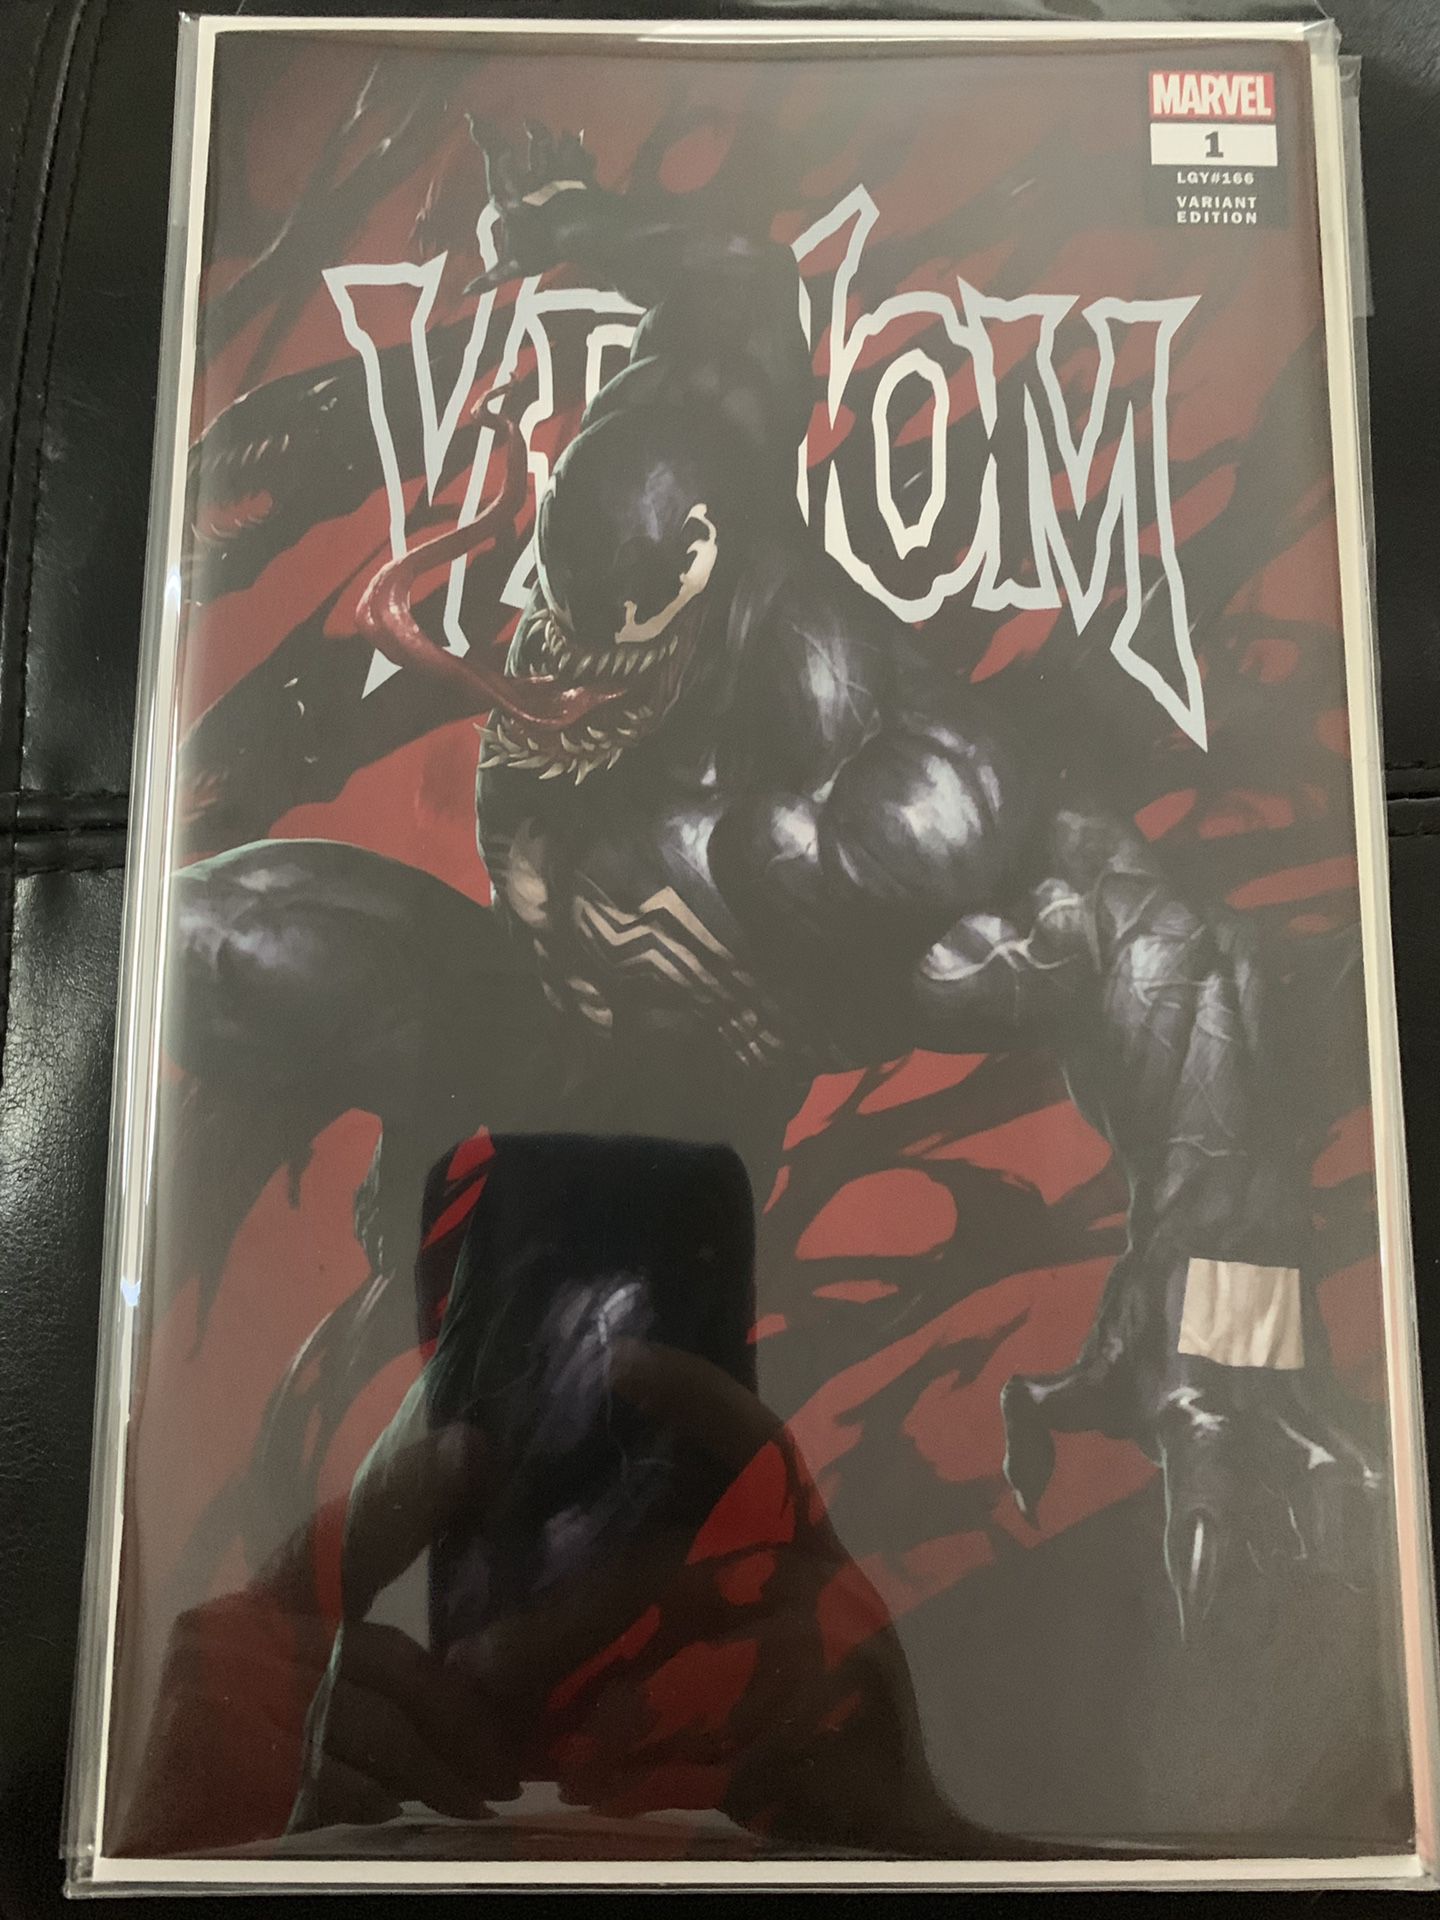 Marvel comic book Venom #1 rare Skan srisuwan variant cover